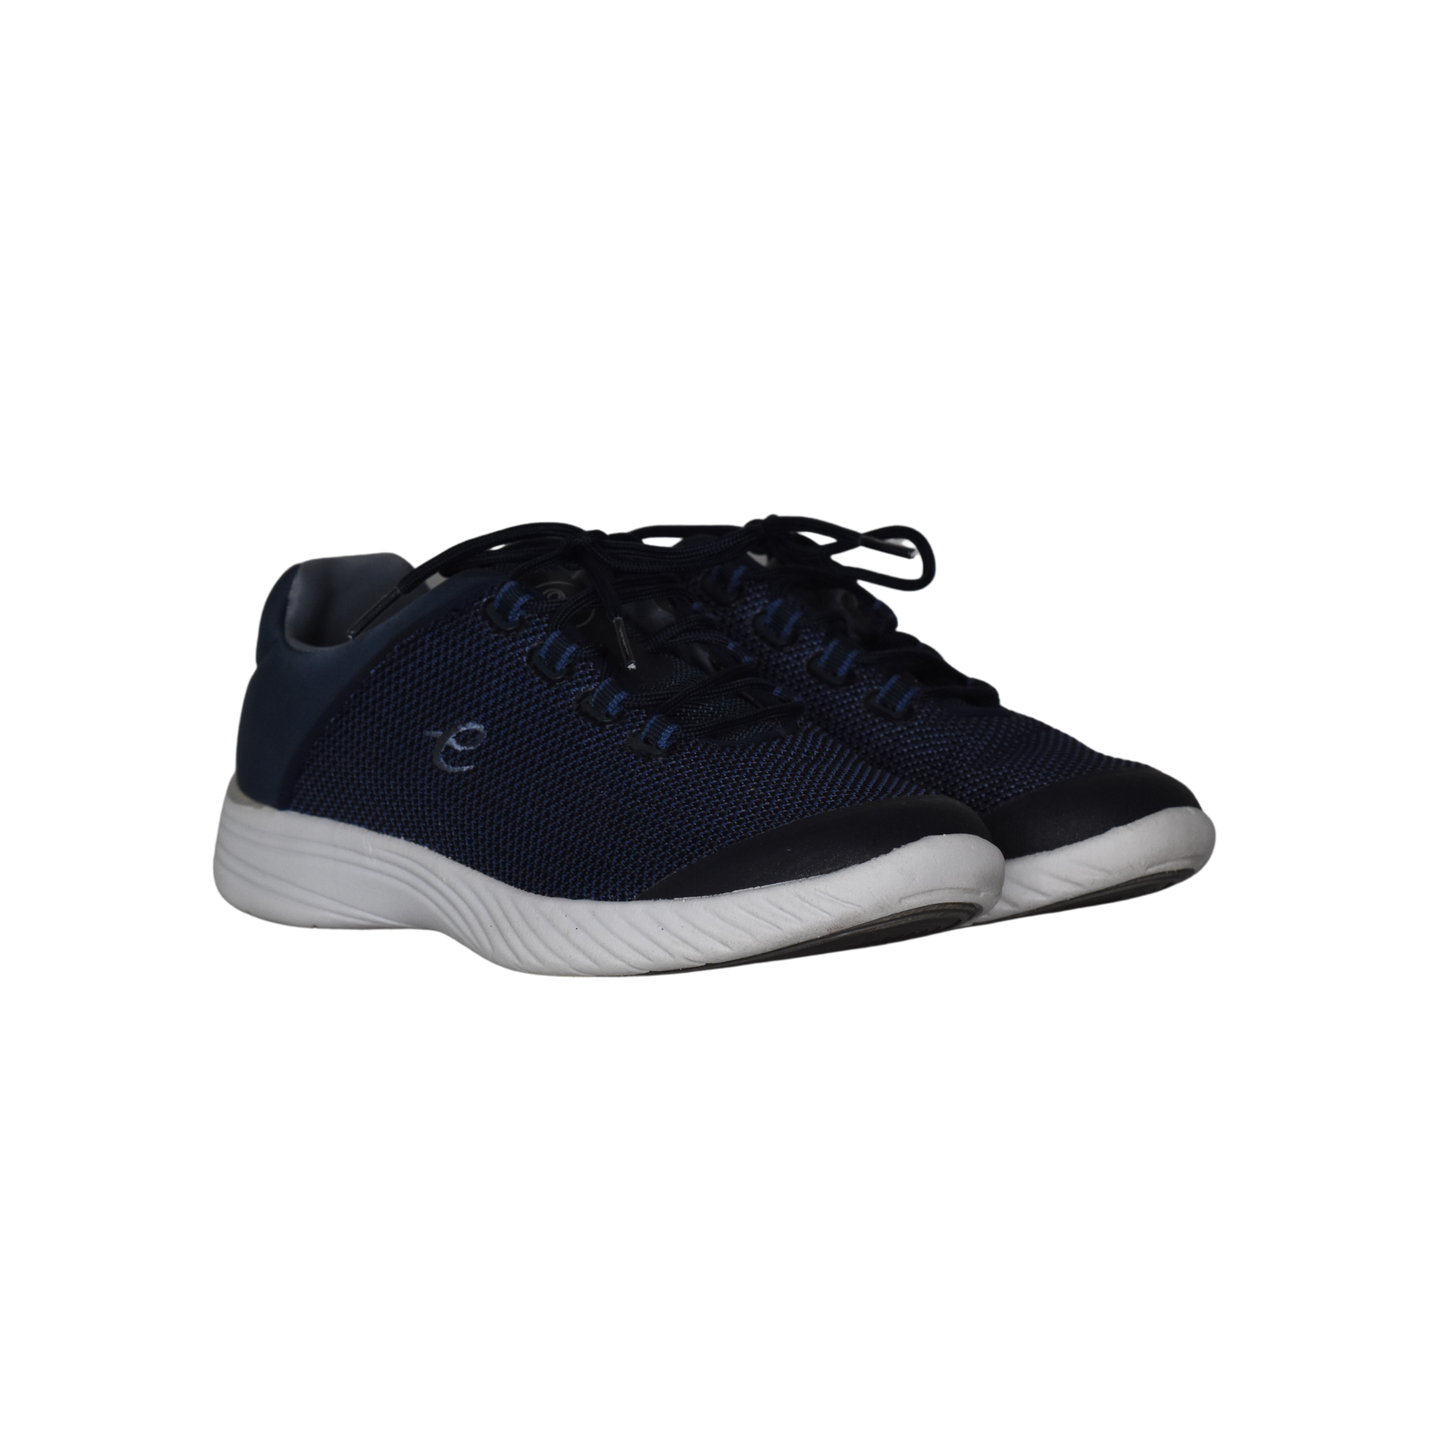 Easy Spirit Sneakers Navy Size 7.5M SKU 000279-7